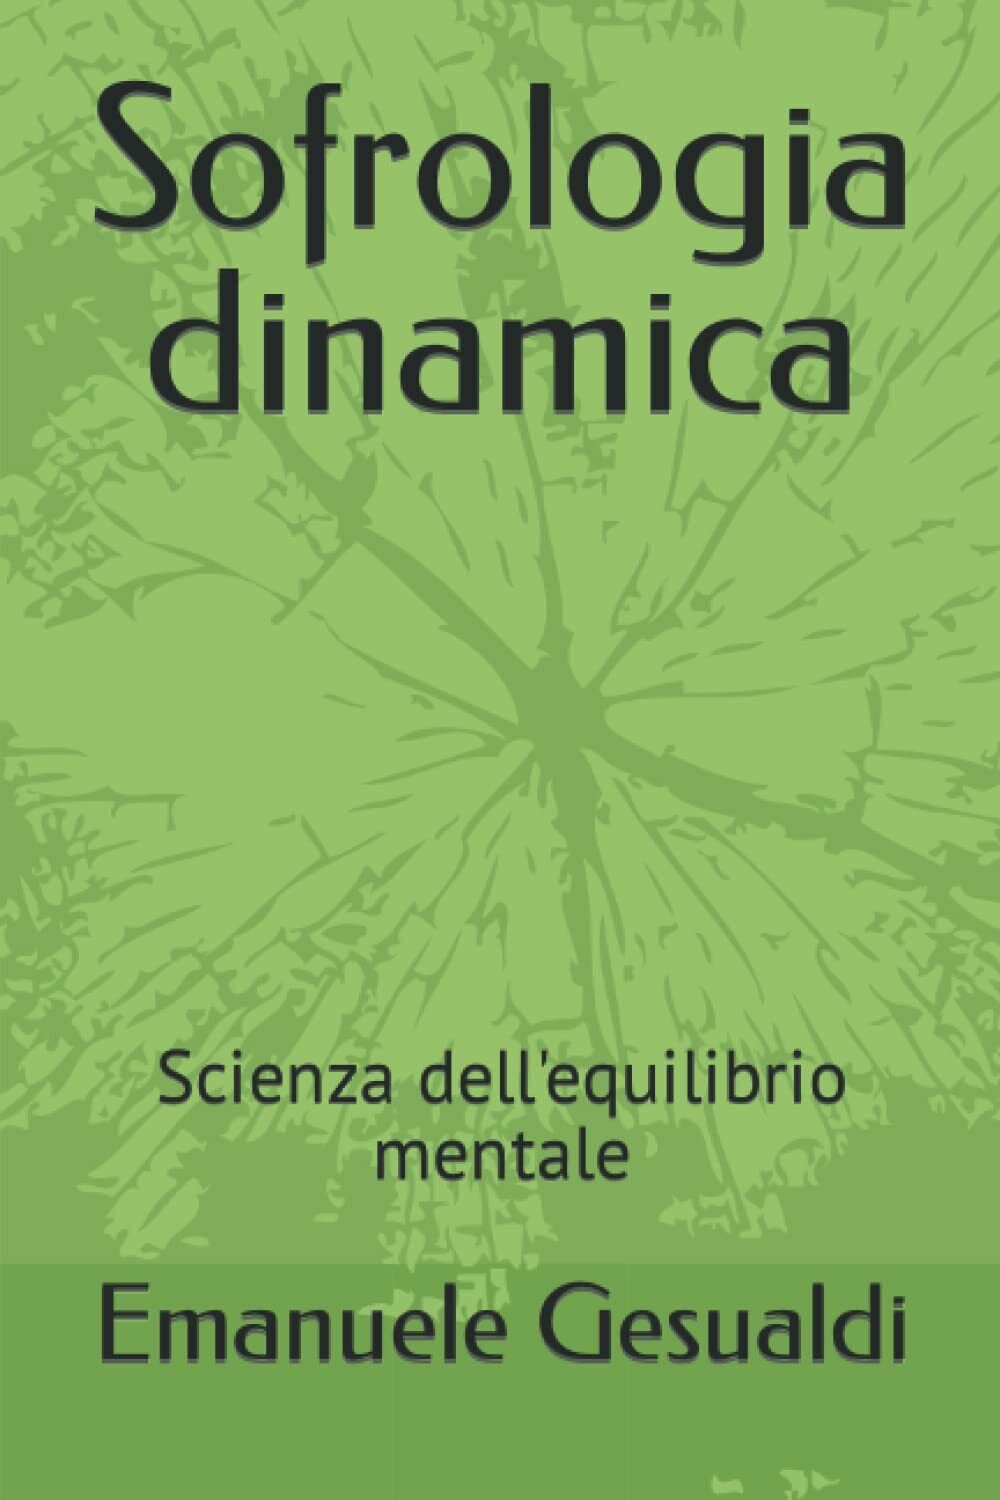 Sofrologia dinamica: Scienza delL'equilibrio mentale di Emanuele Gesualdi,  2022